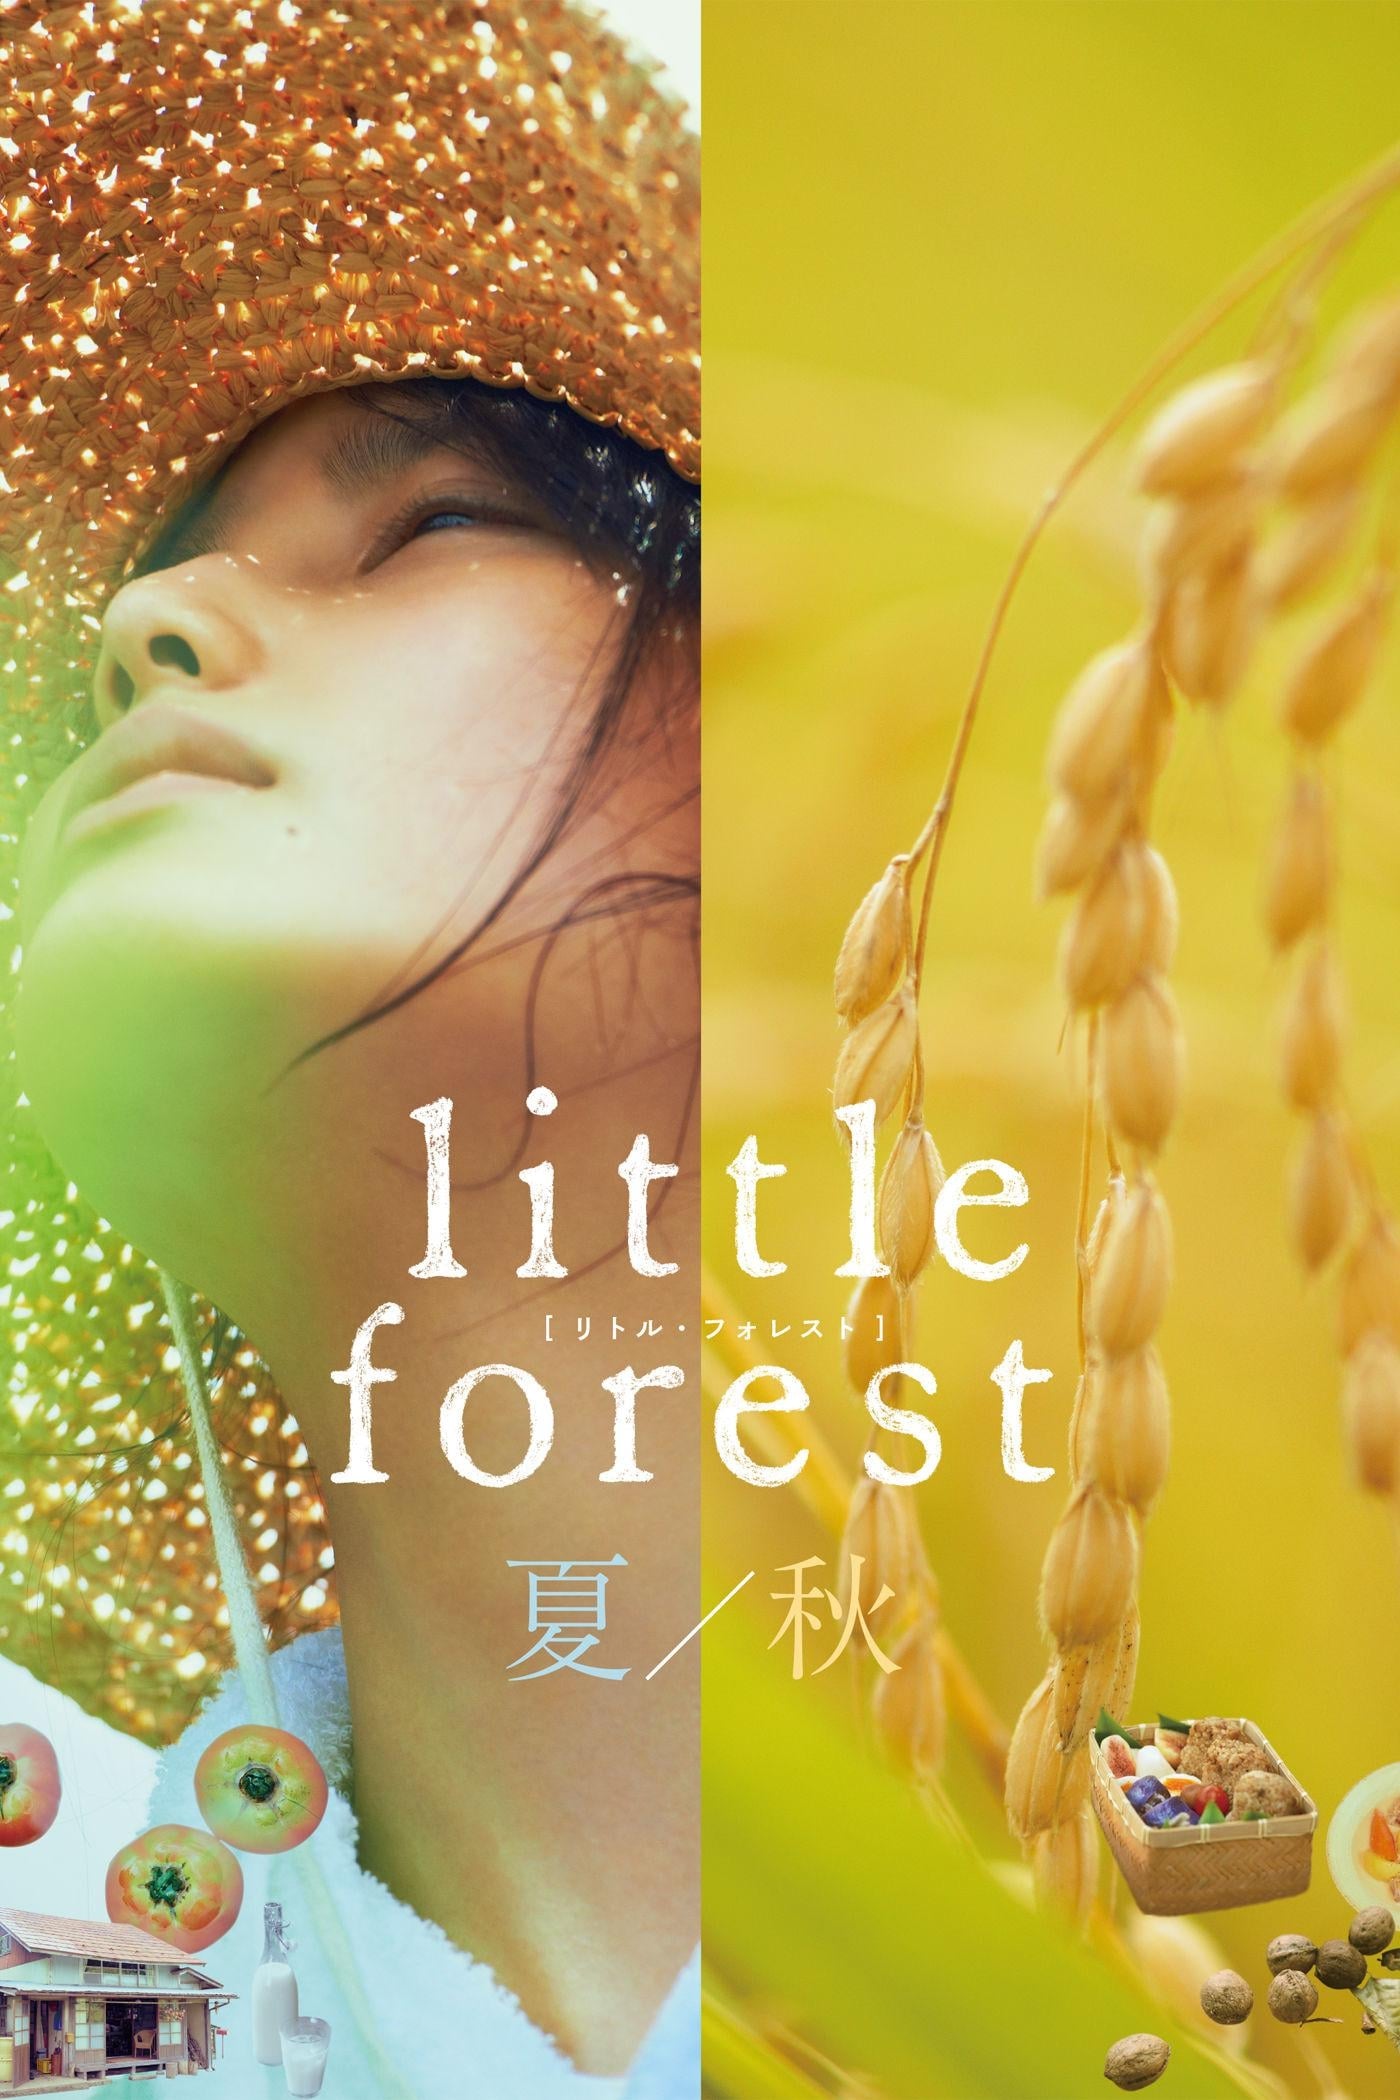 جنگل کوچک تابستان پاییز (Little Forest: Summer/Autumn)